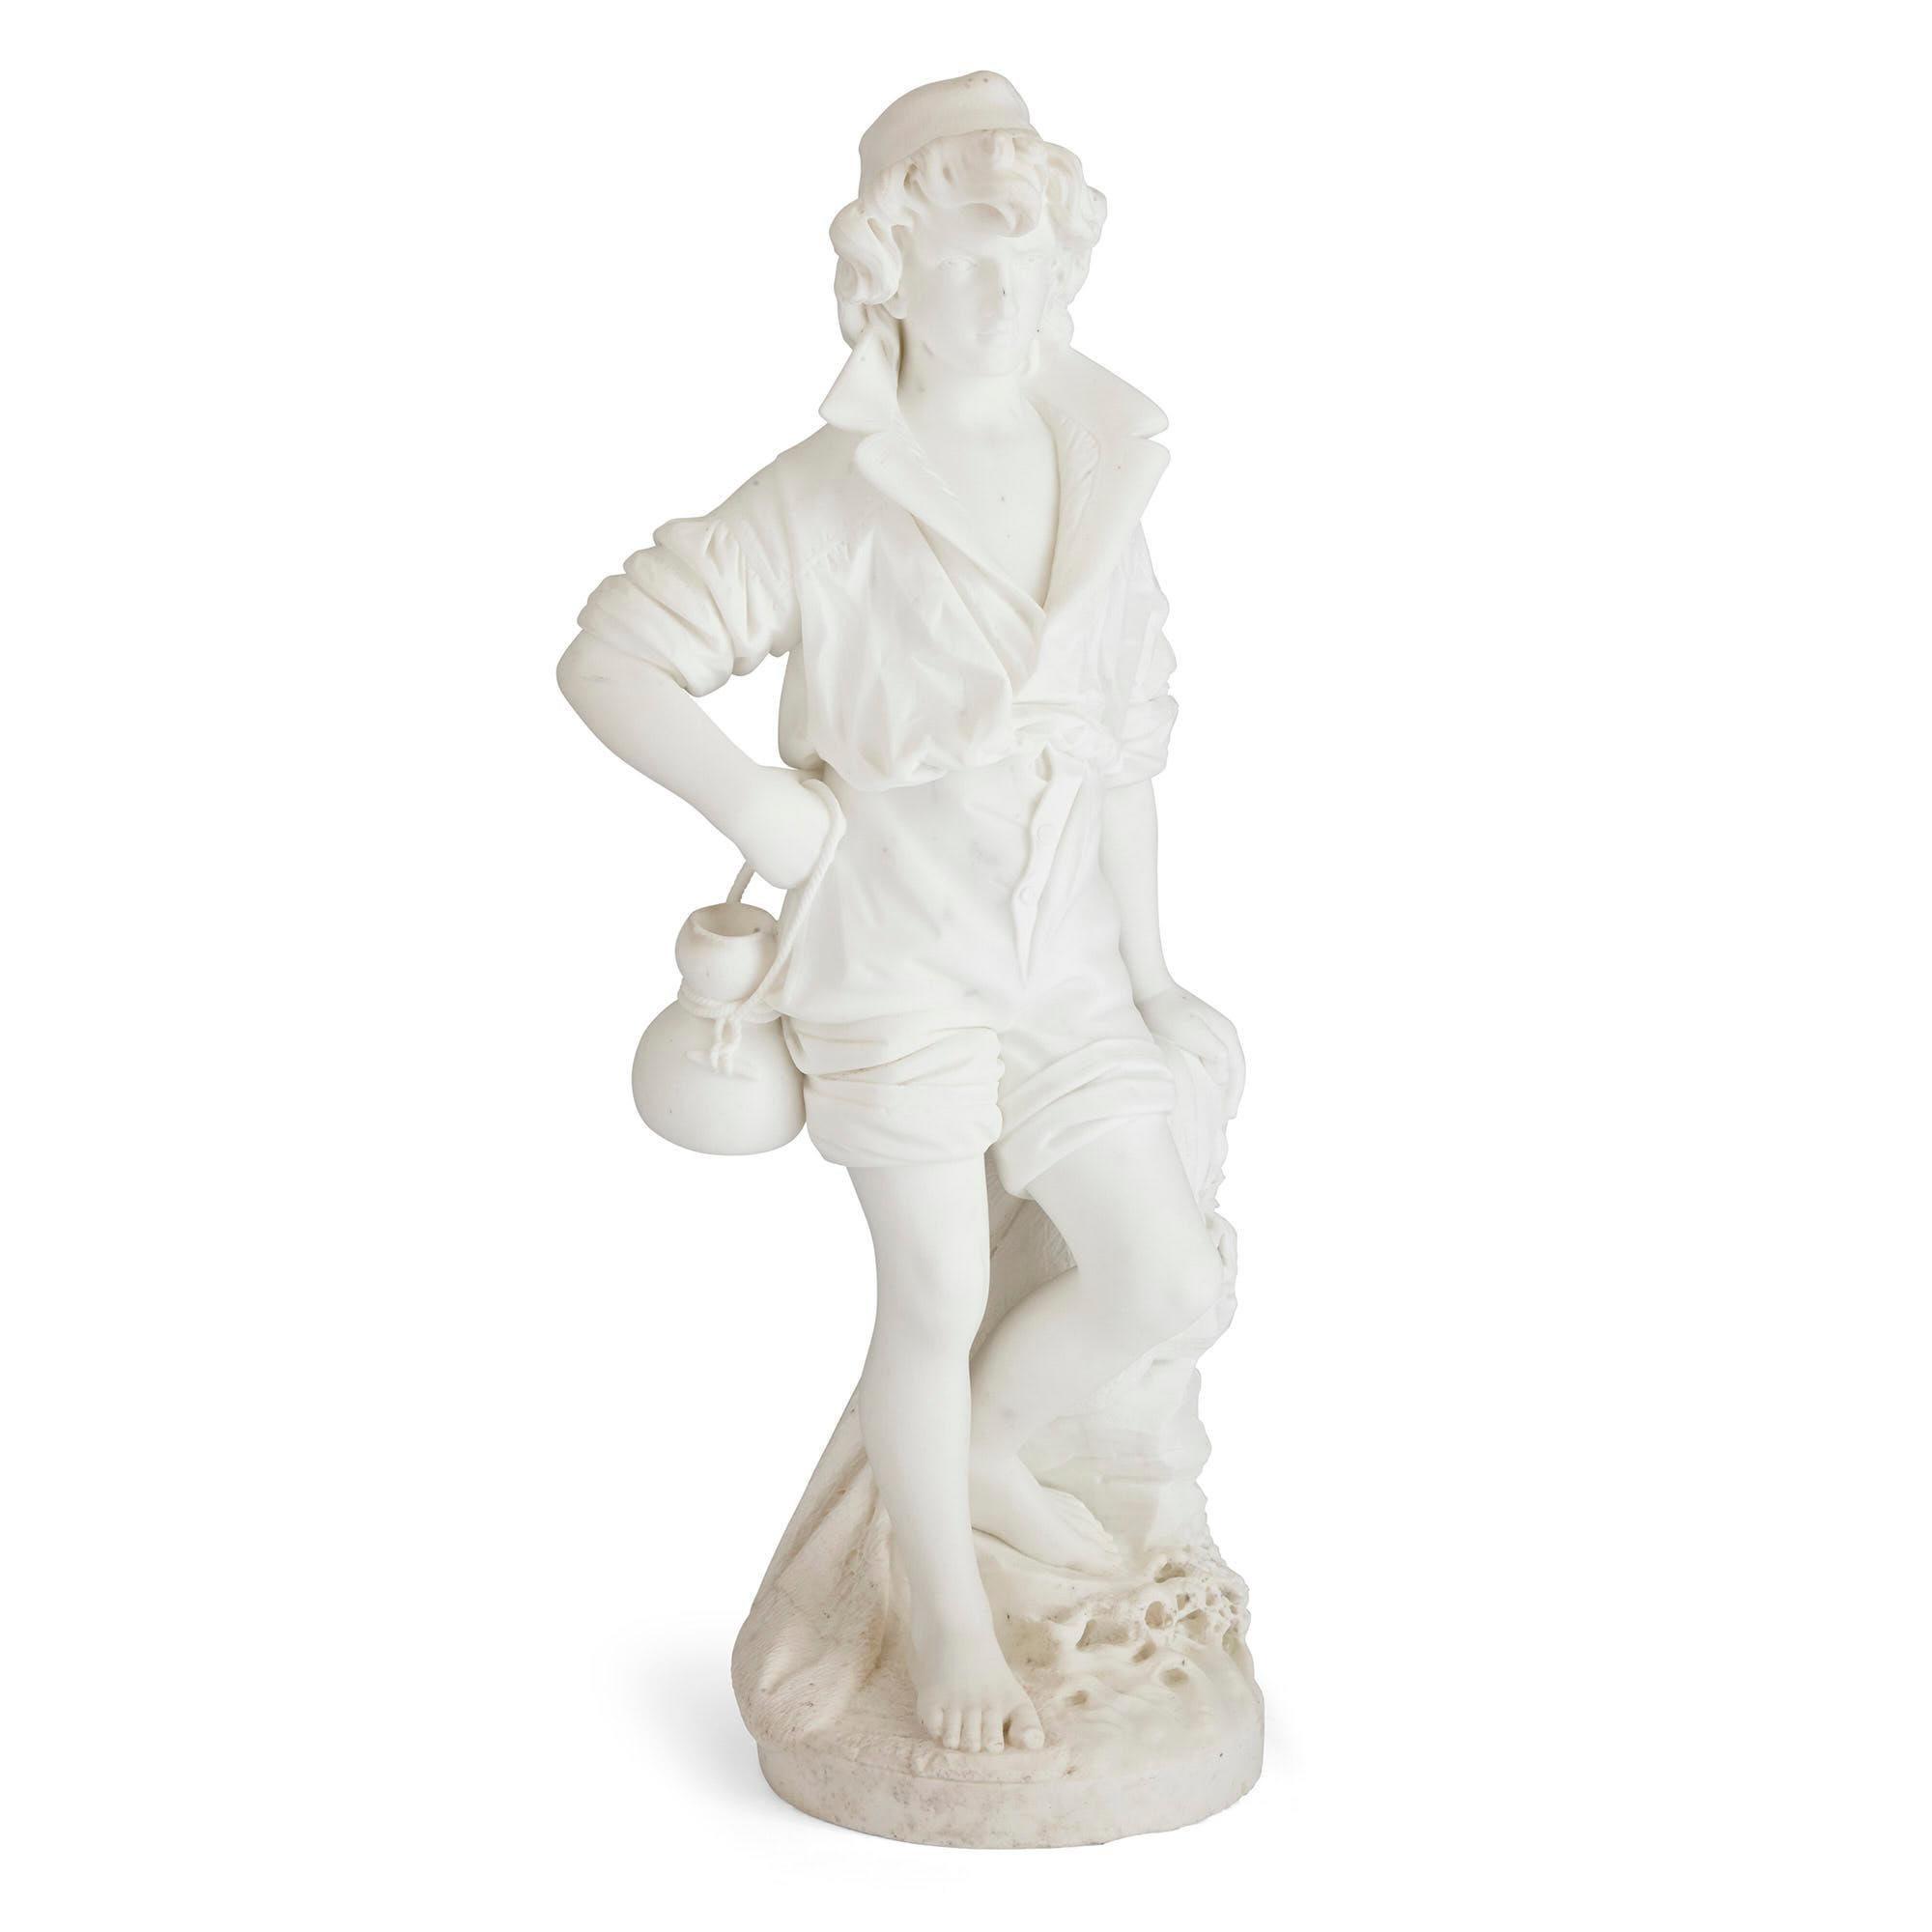 Grande sculpture italienne en marbre de Pietro Bazzanti
Italien, fin du XIXe siècle
Mesures : Hauteur 105 cm, largeur 45 cm, profondeur 40 cm.

La présente sculpture, taillée dans un marbre blanc brillant, représente un jeune garçon debout sur